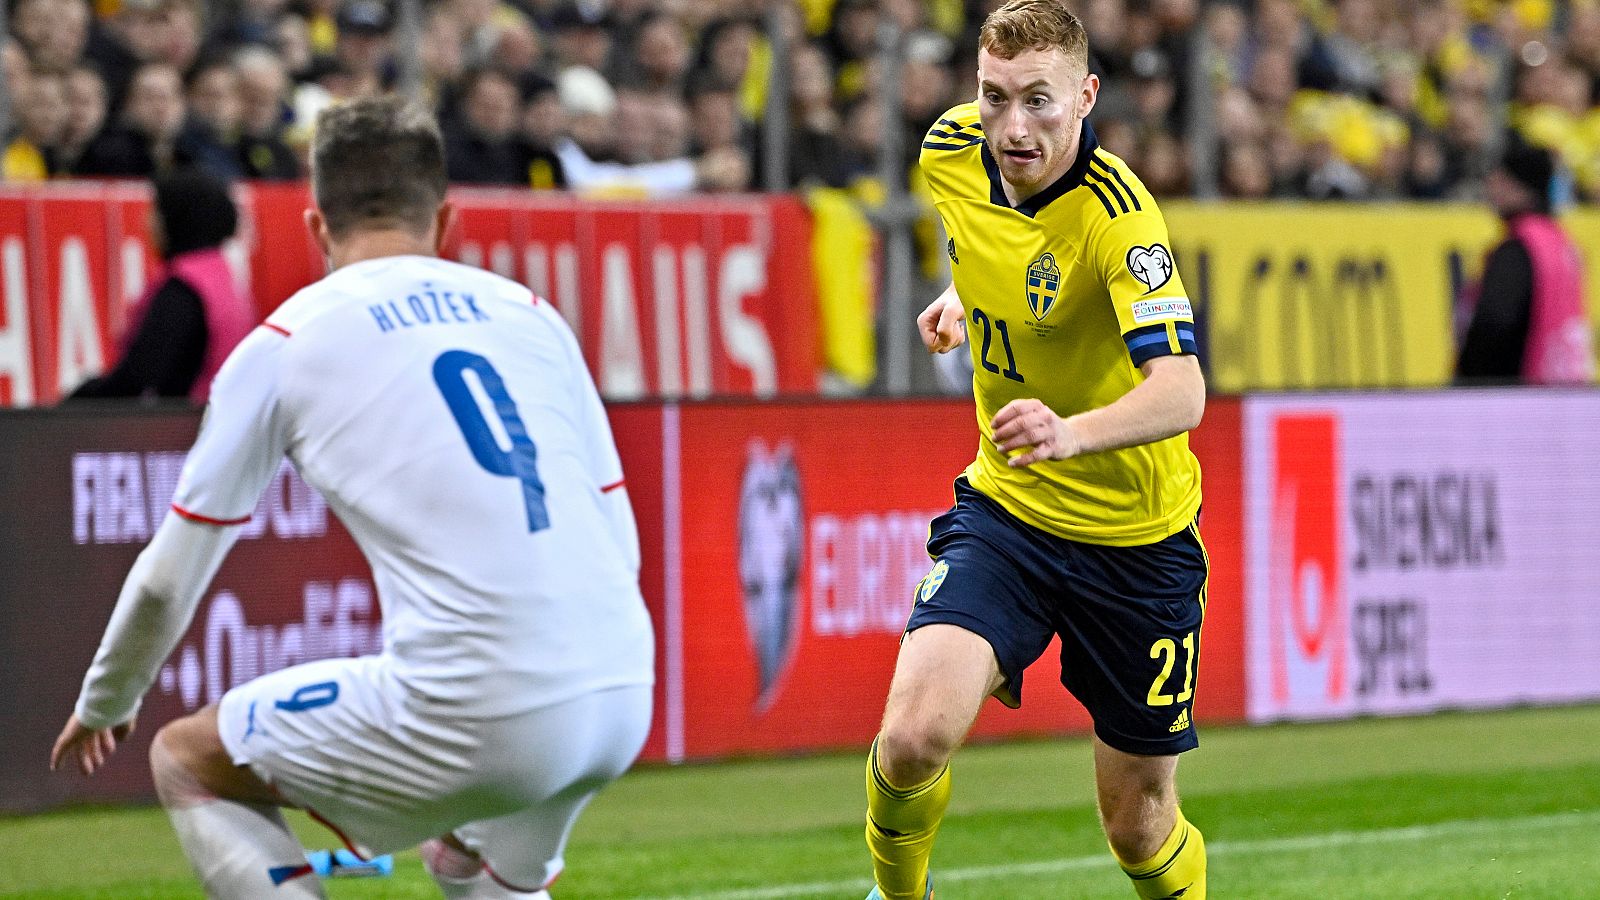 Fútbol - Clasificación Campeonato del Mundo. Play Off 1: Suecia - Rep. Checa